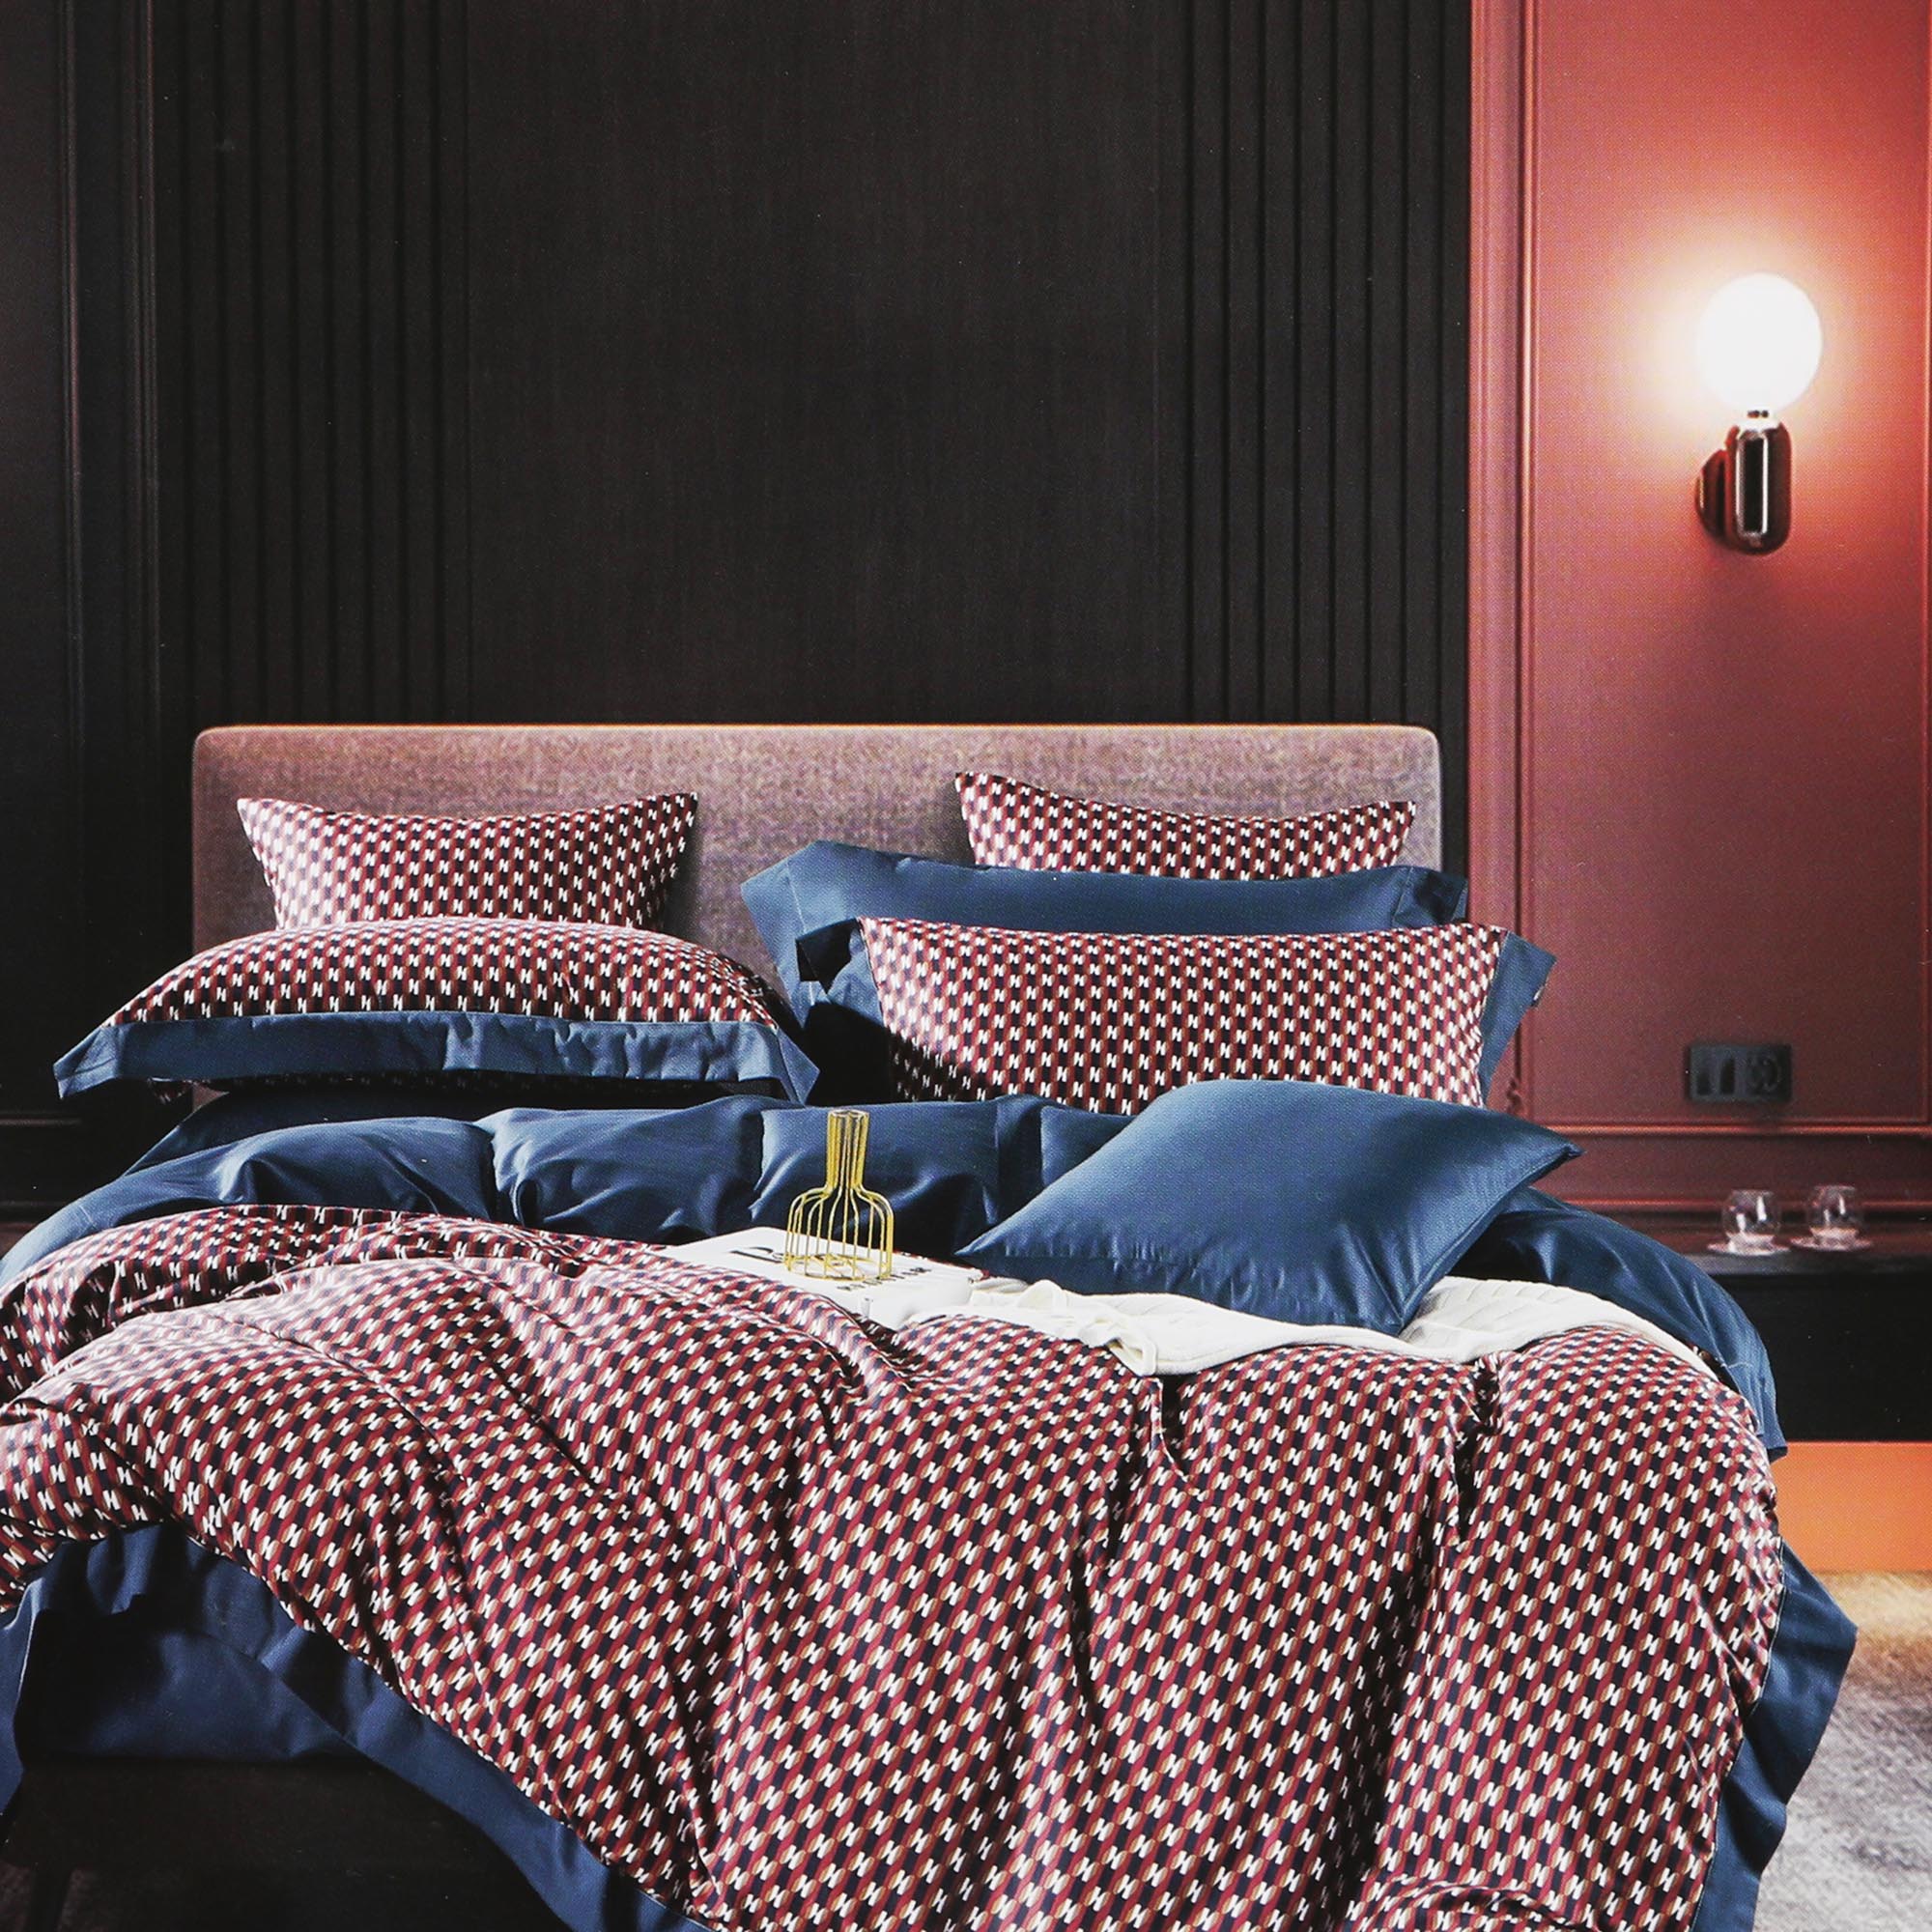 Постельный комплект Wonne Traum elegance etra двуспальный евро постельный комплект matteo bosio разноцветный двуспальный